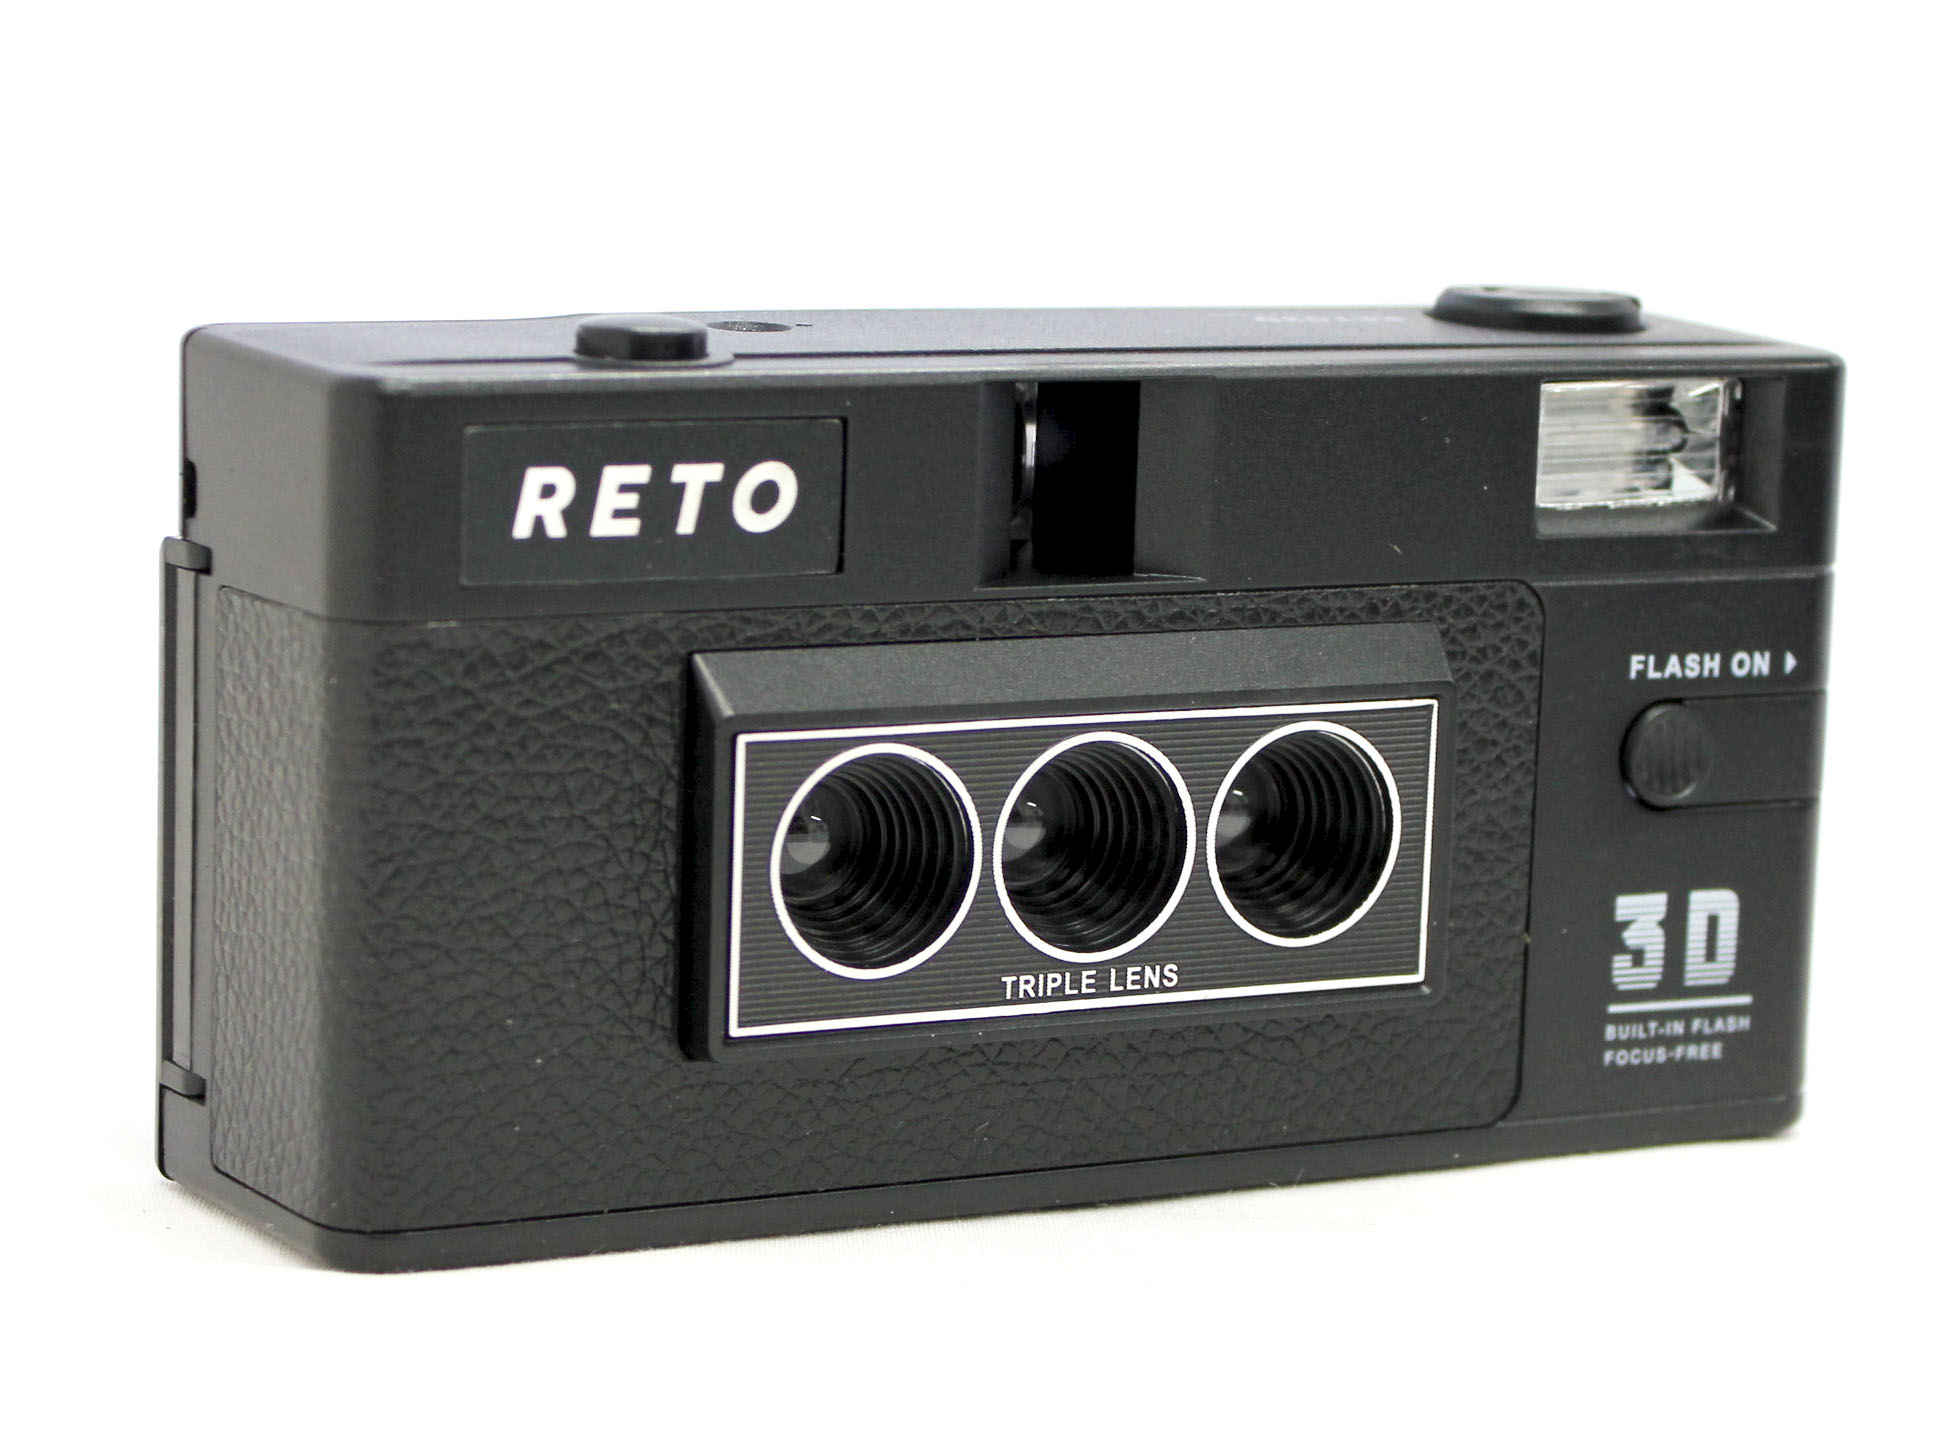 Reto 3D 35mm Film Camera Triple Lens similar Nishika N8000 from Japan Photo 2